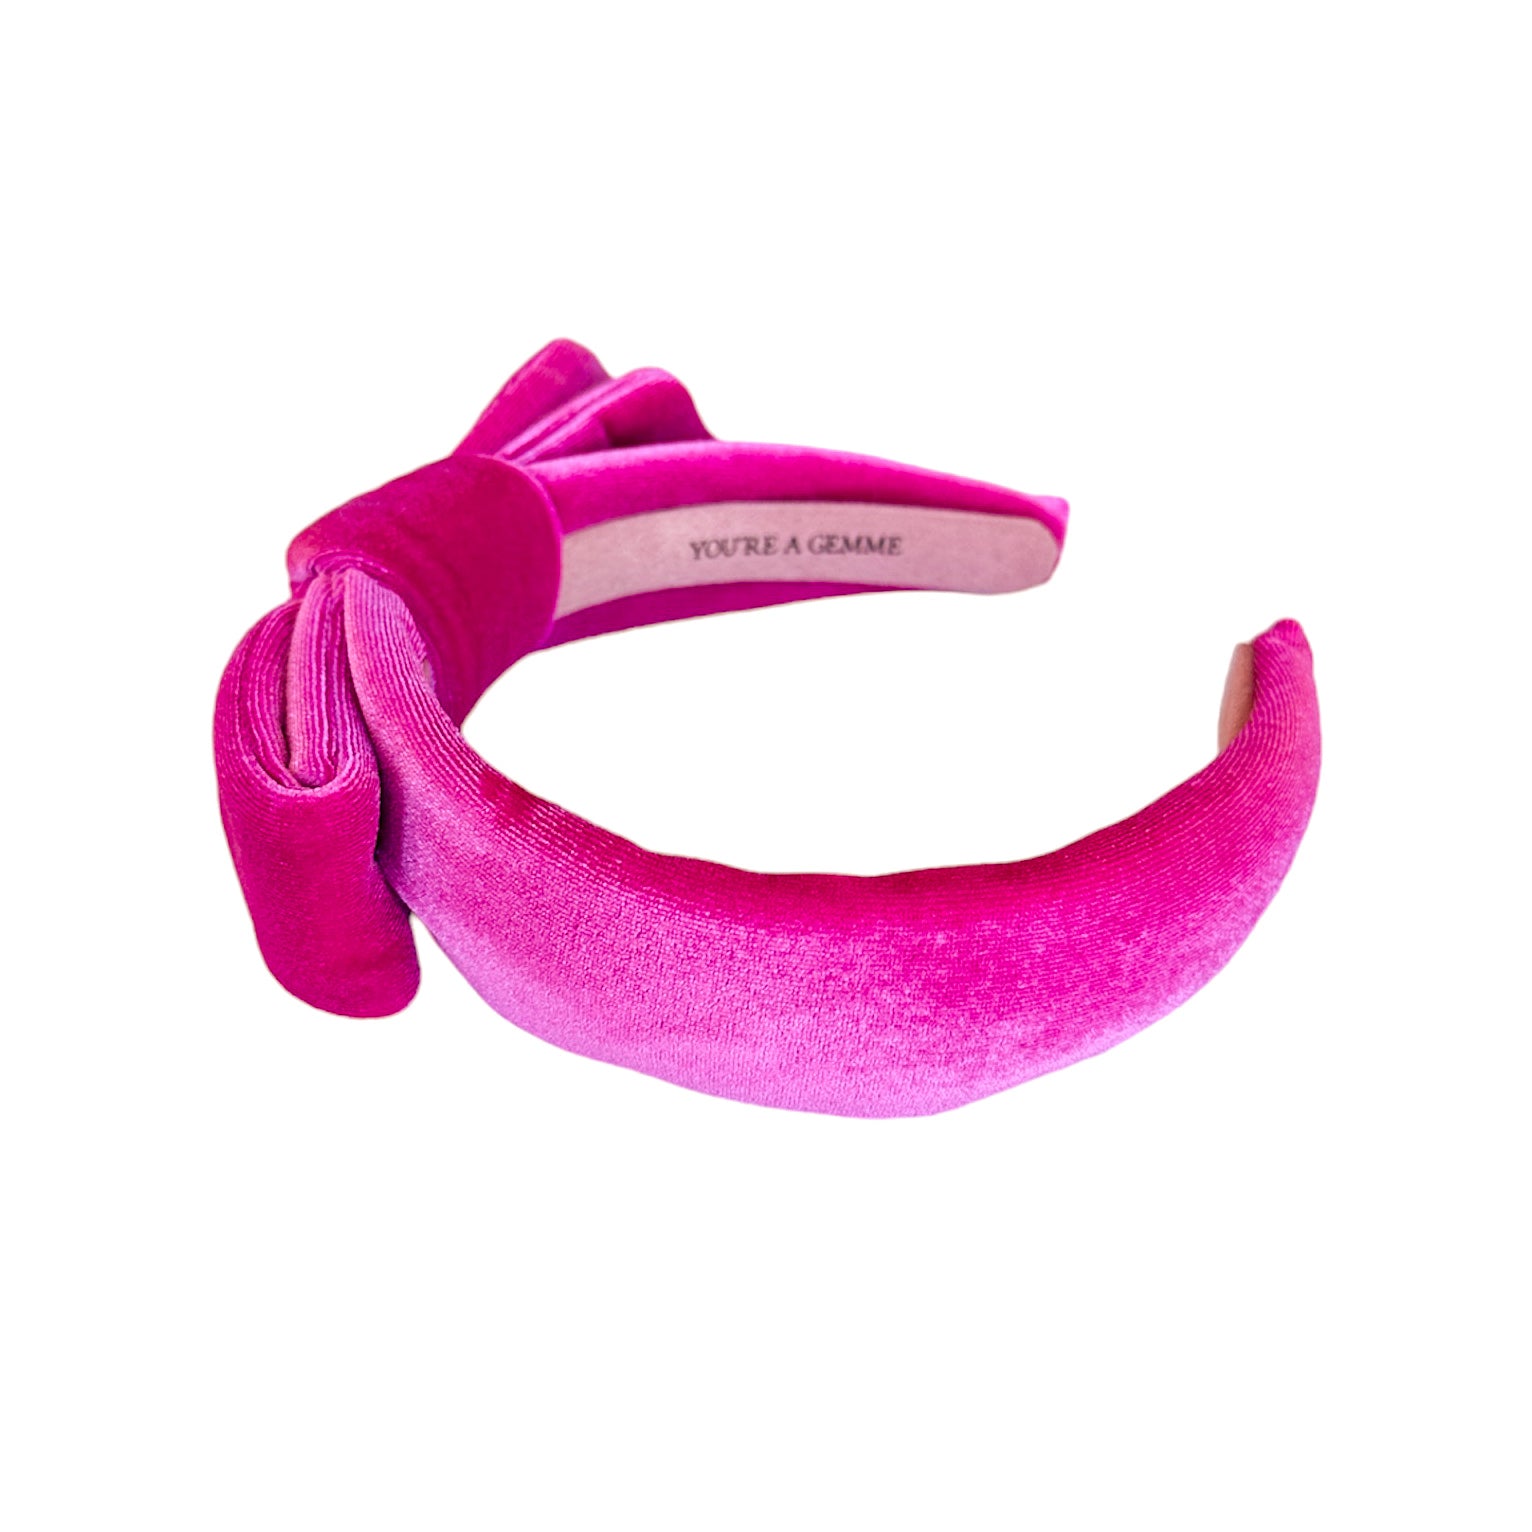 Bubblegum Pink Velvet Side Bow  Headband